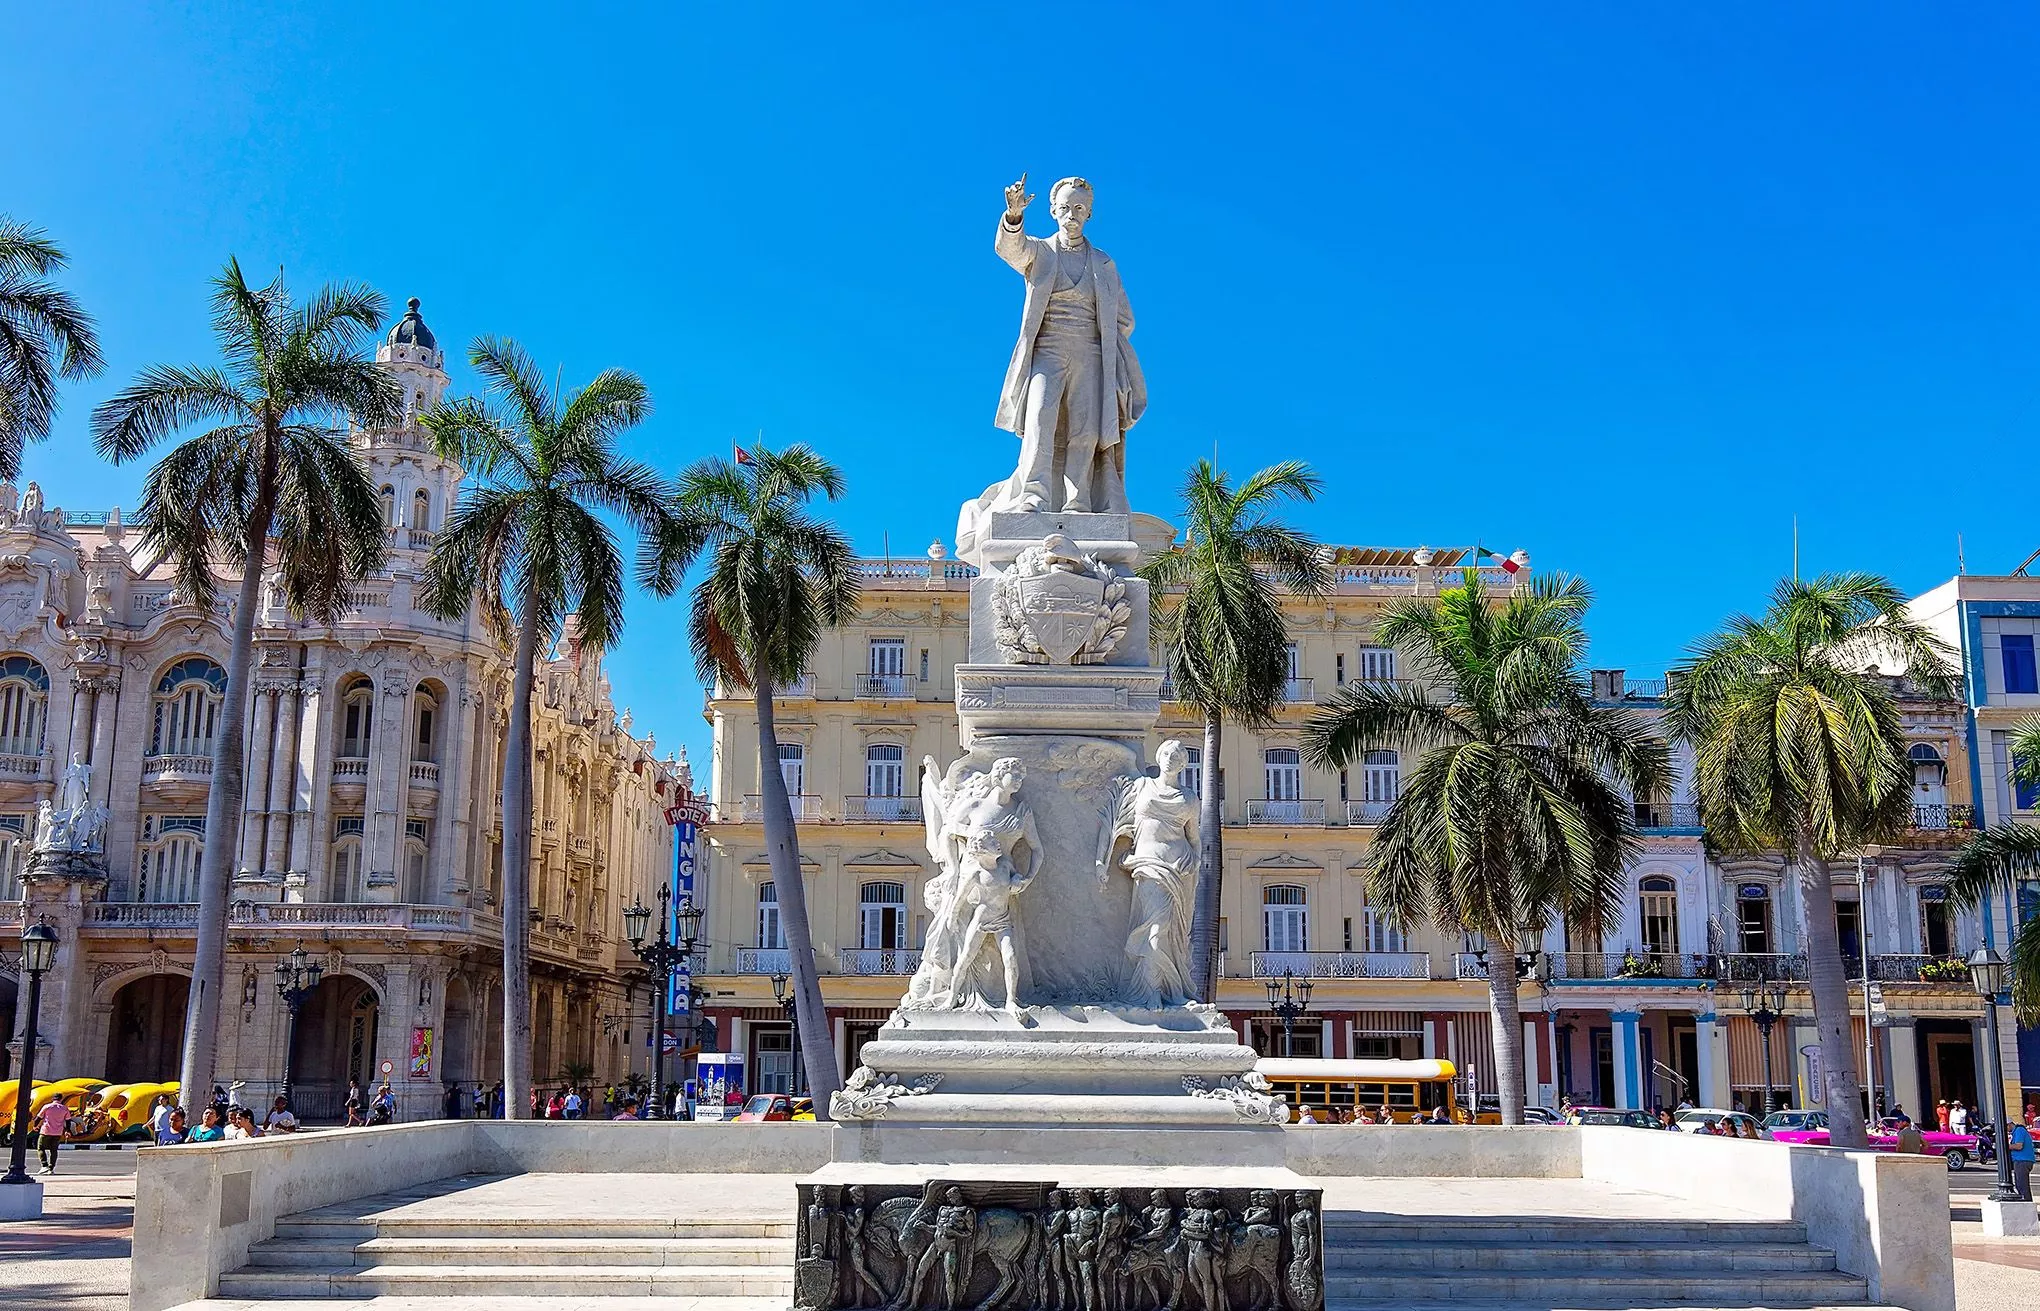 Parque Central im Zentrum Havannas mit einem Denkmal für den Poeten José Marti